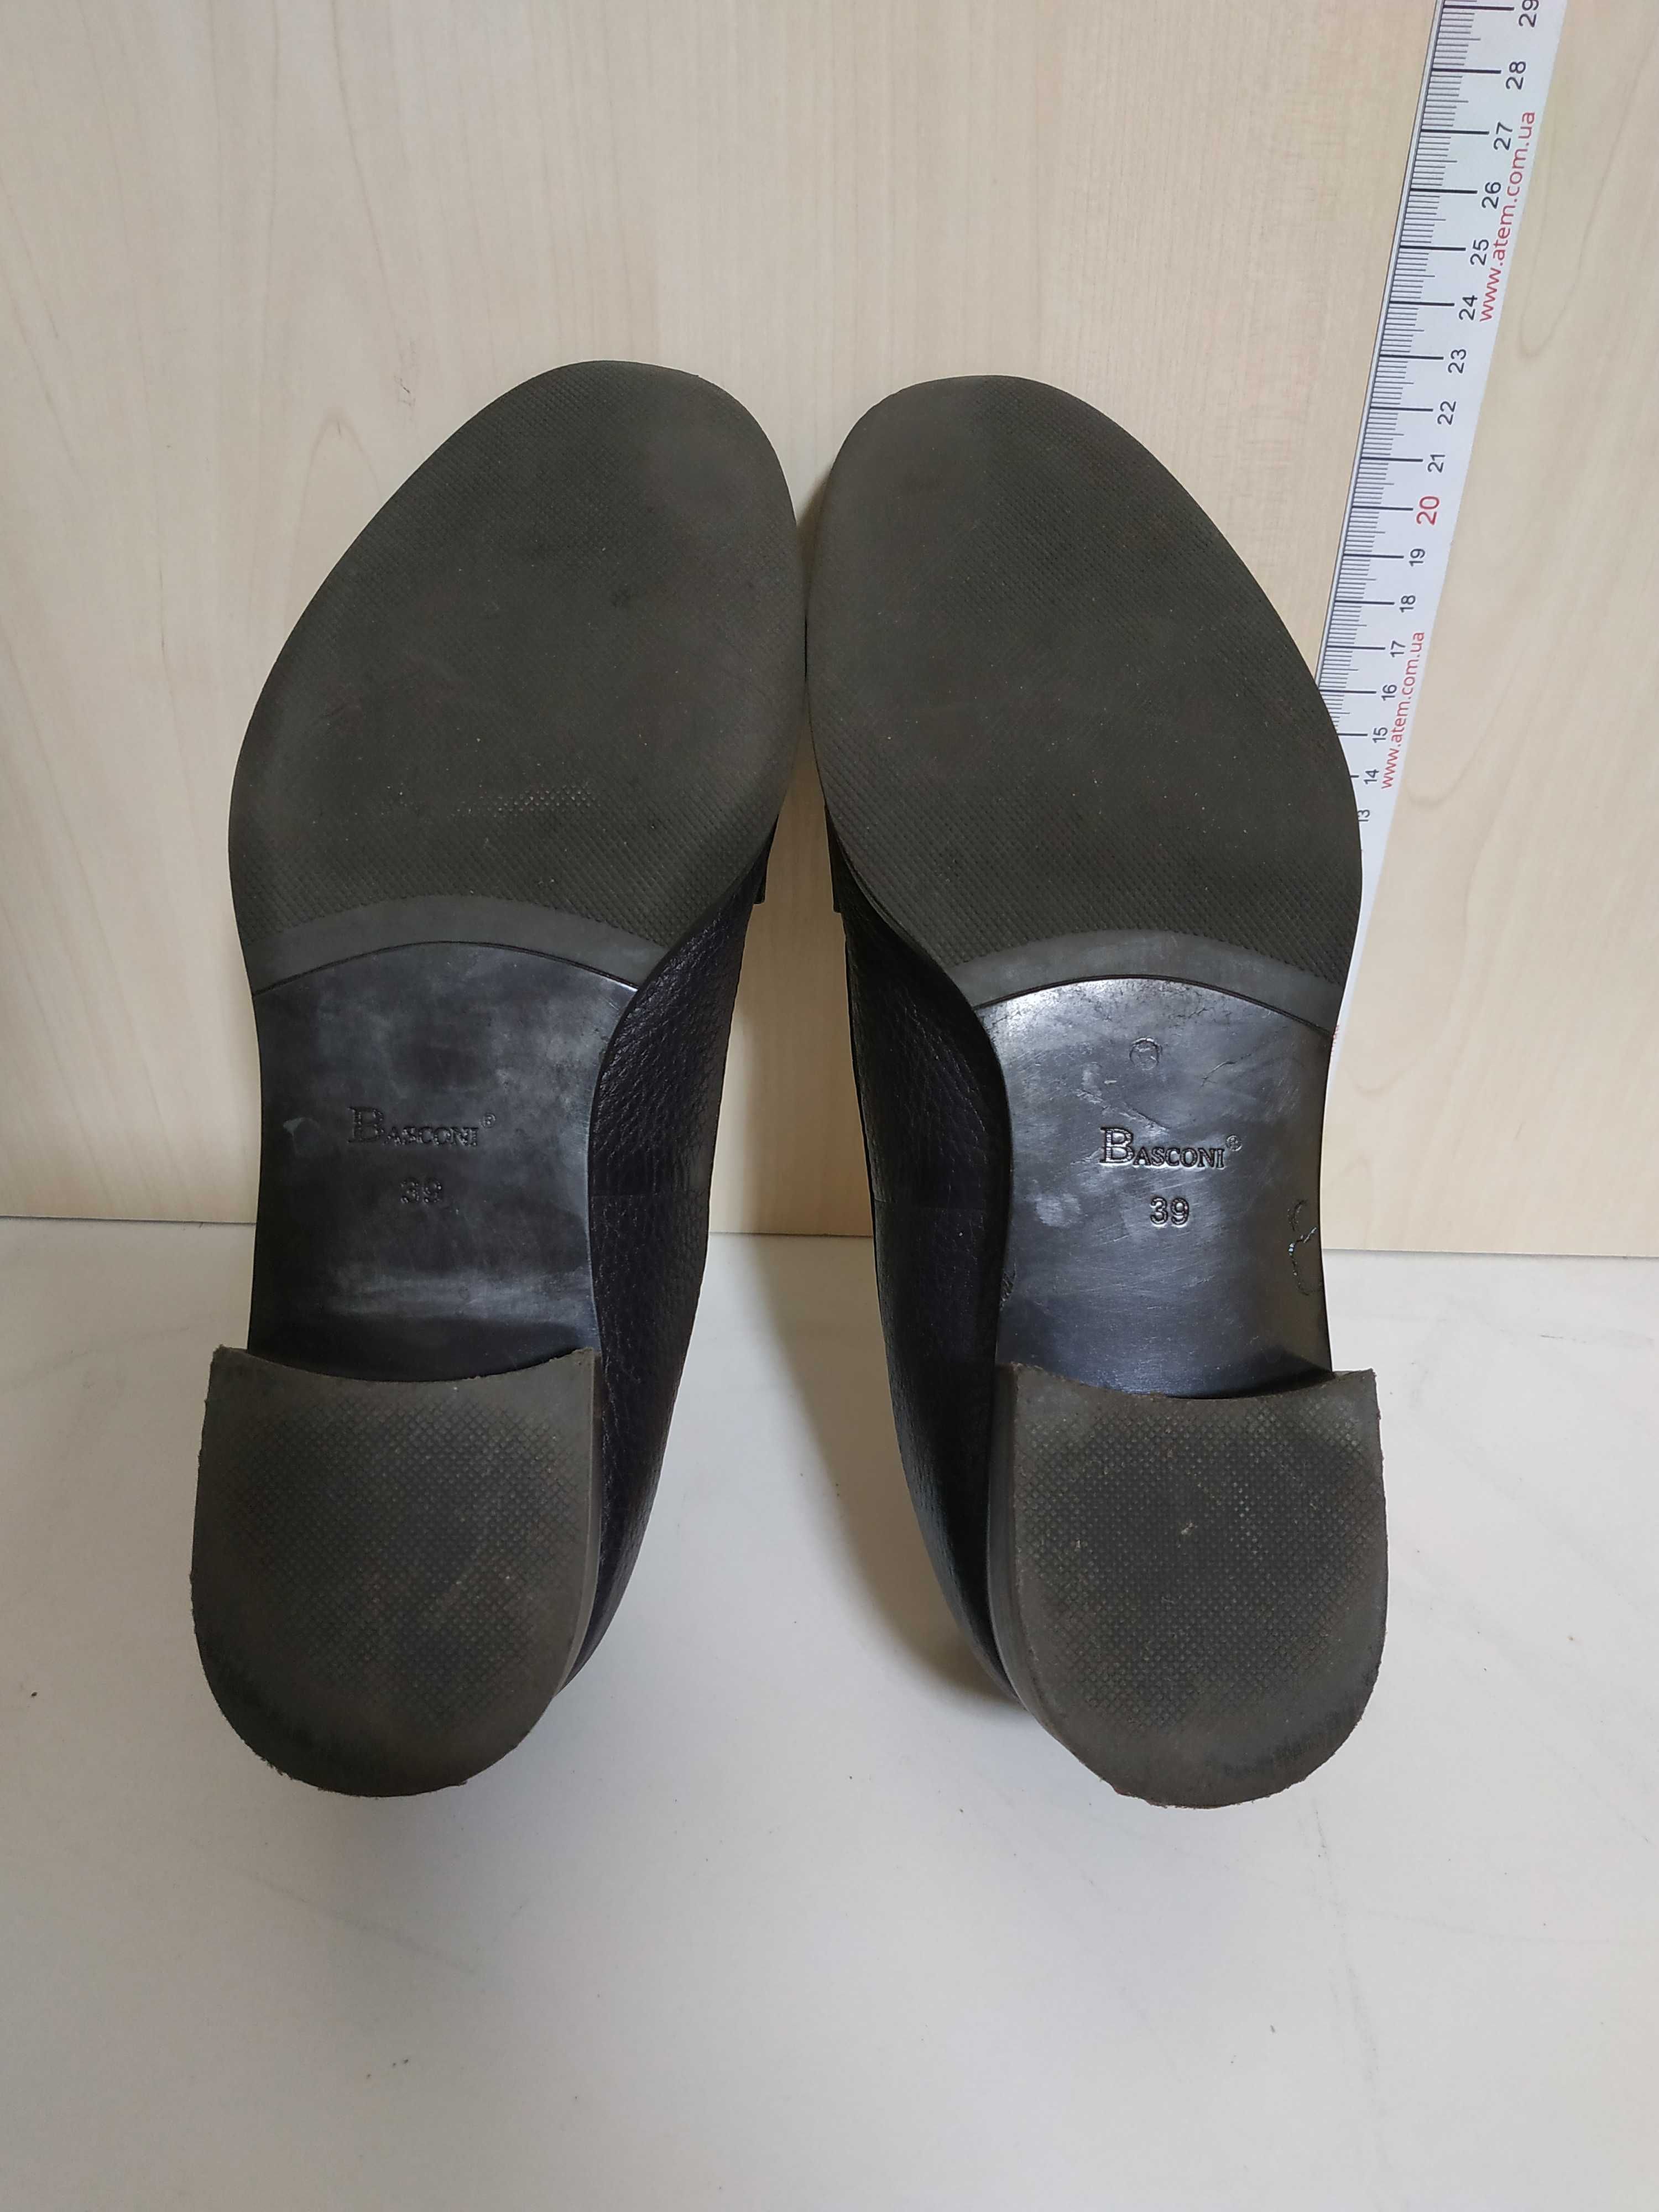 Женские кожаные туфли Basconi с лаковыми носками, р. 39